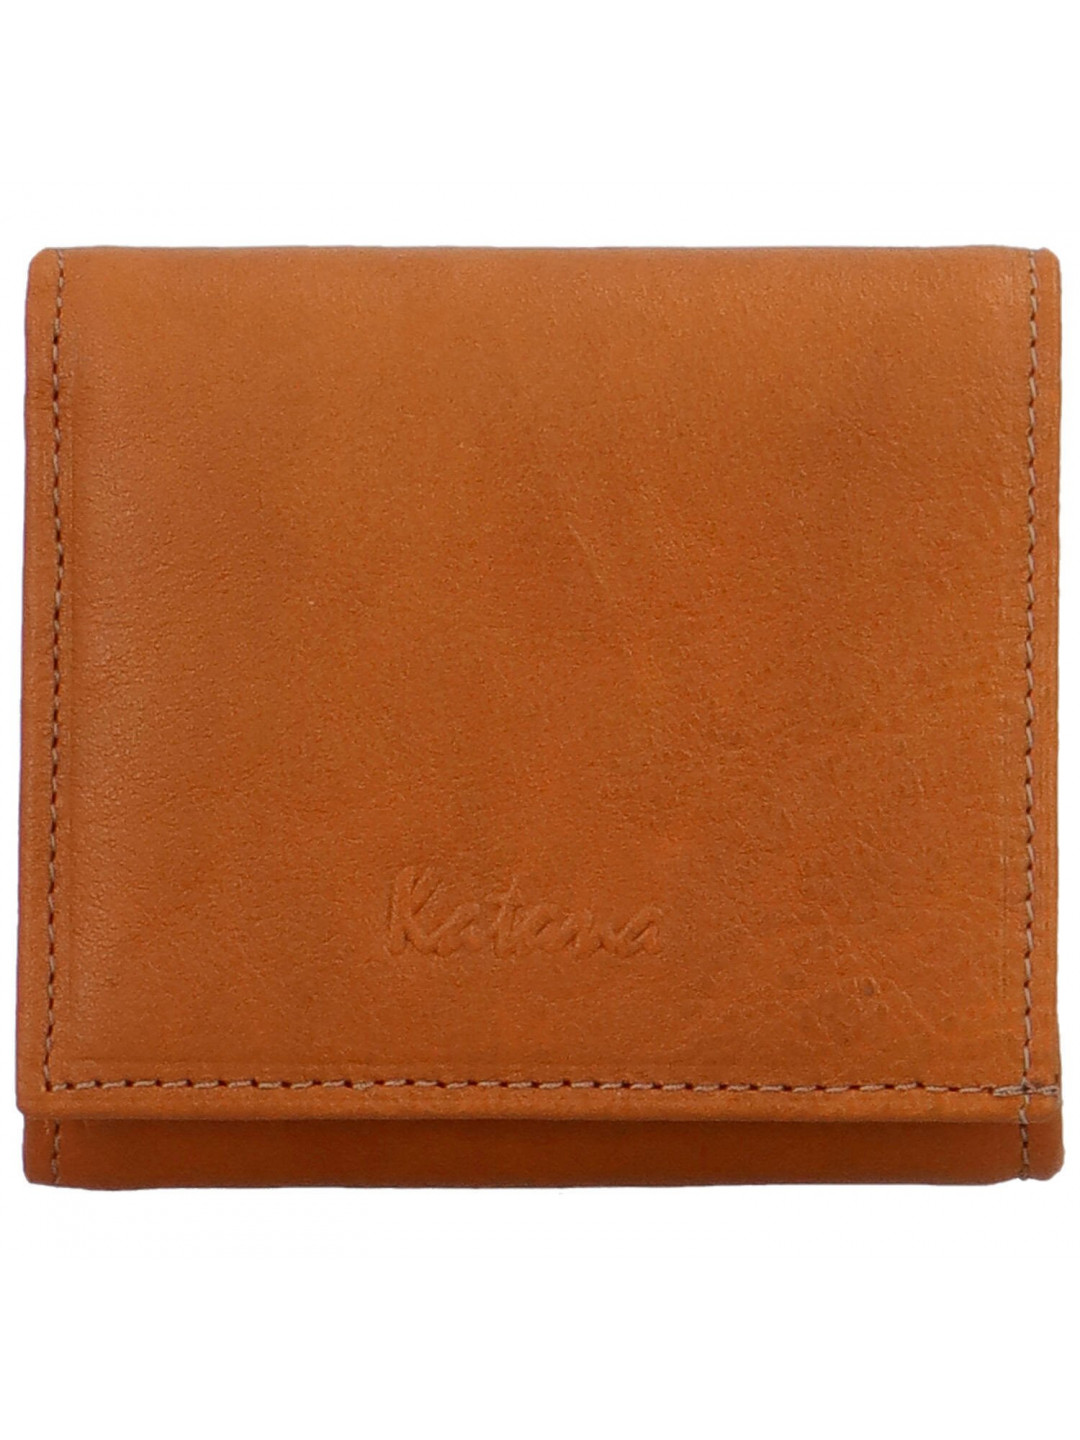 Elegantní dámská peněženka Katana Kittina oranžová